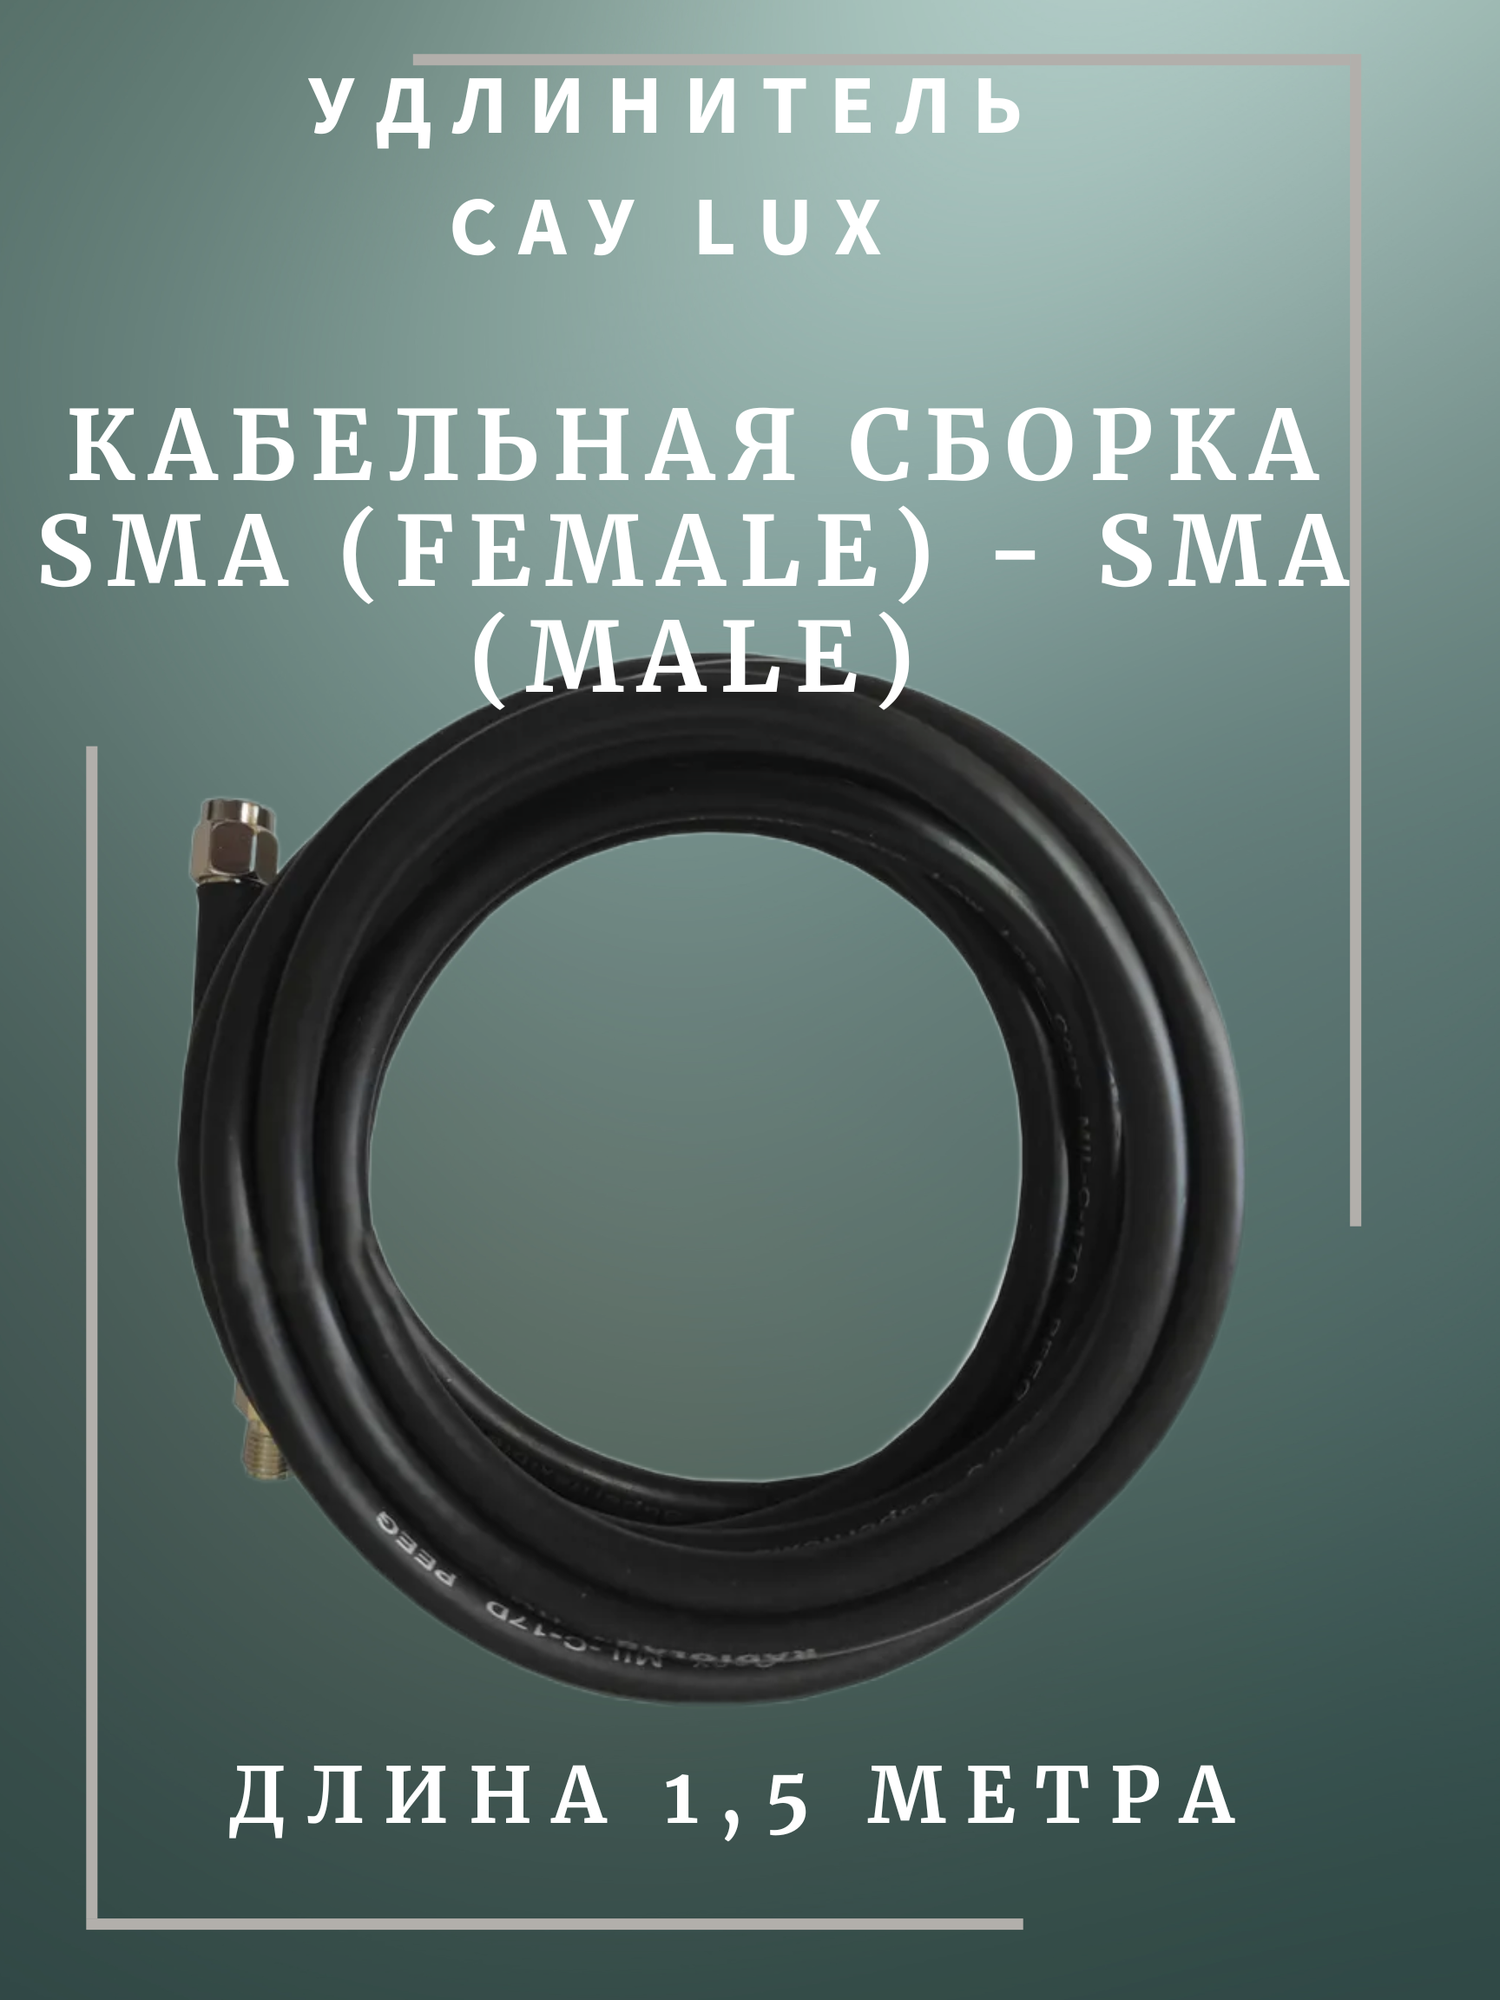 САУ-15. черный Кабельная сборка удлинитель SMA(female)-SMA(male) 15 метра кабель Rg-58 a/u 50 Ом